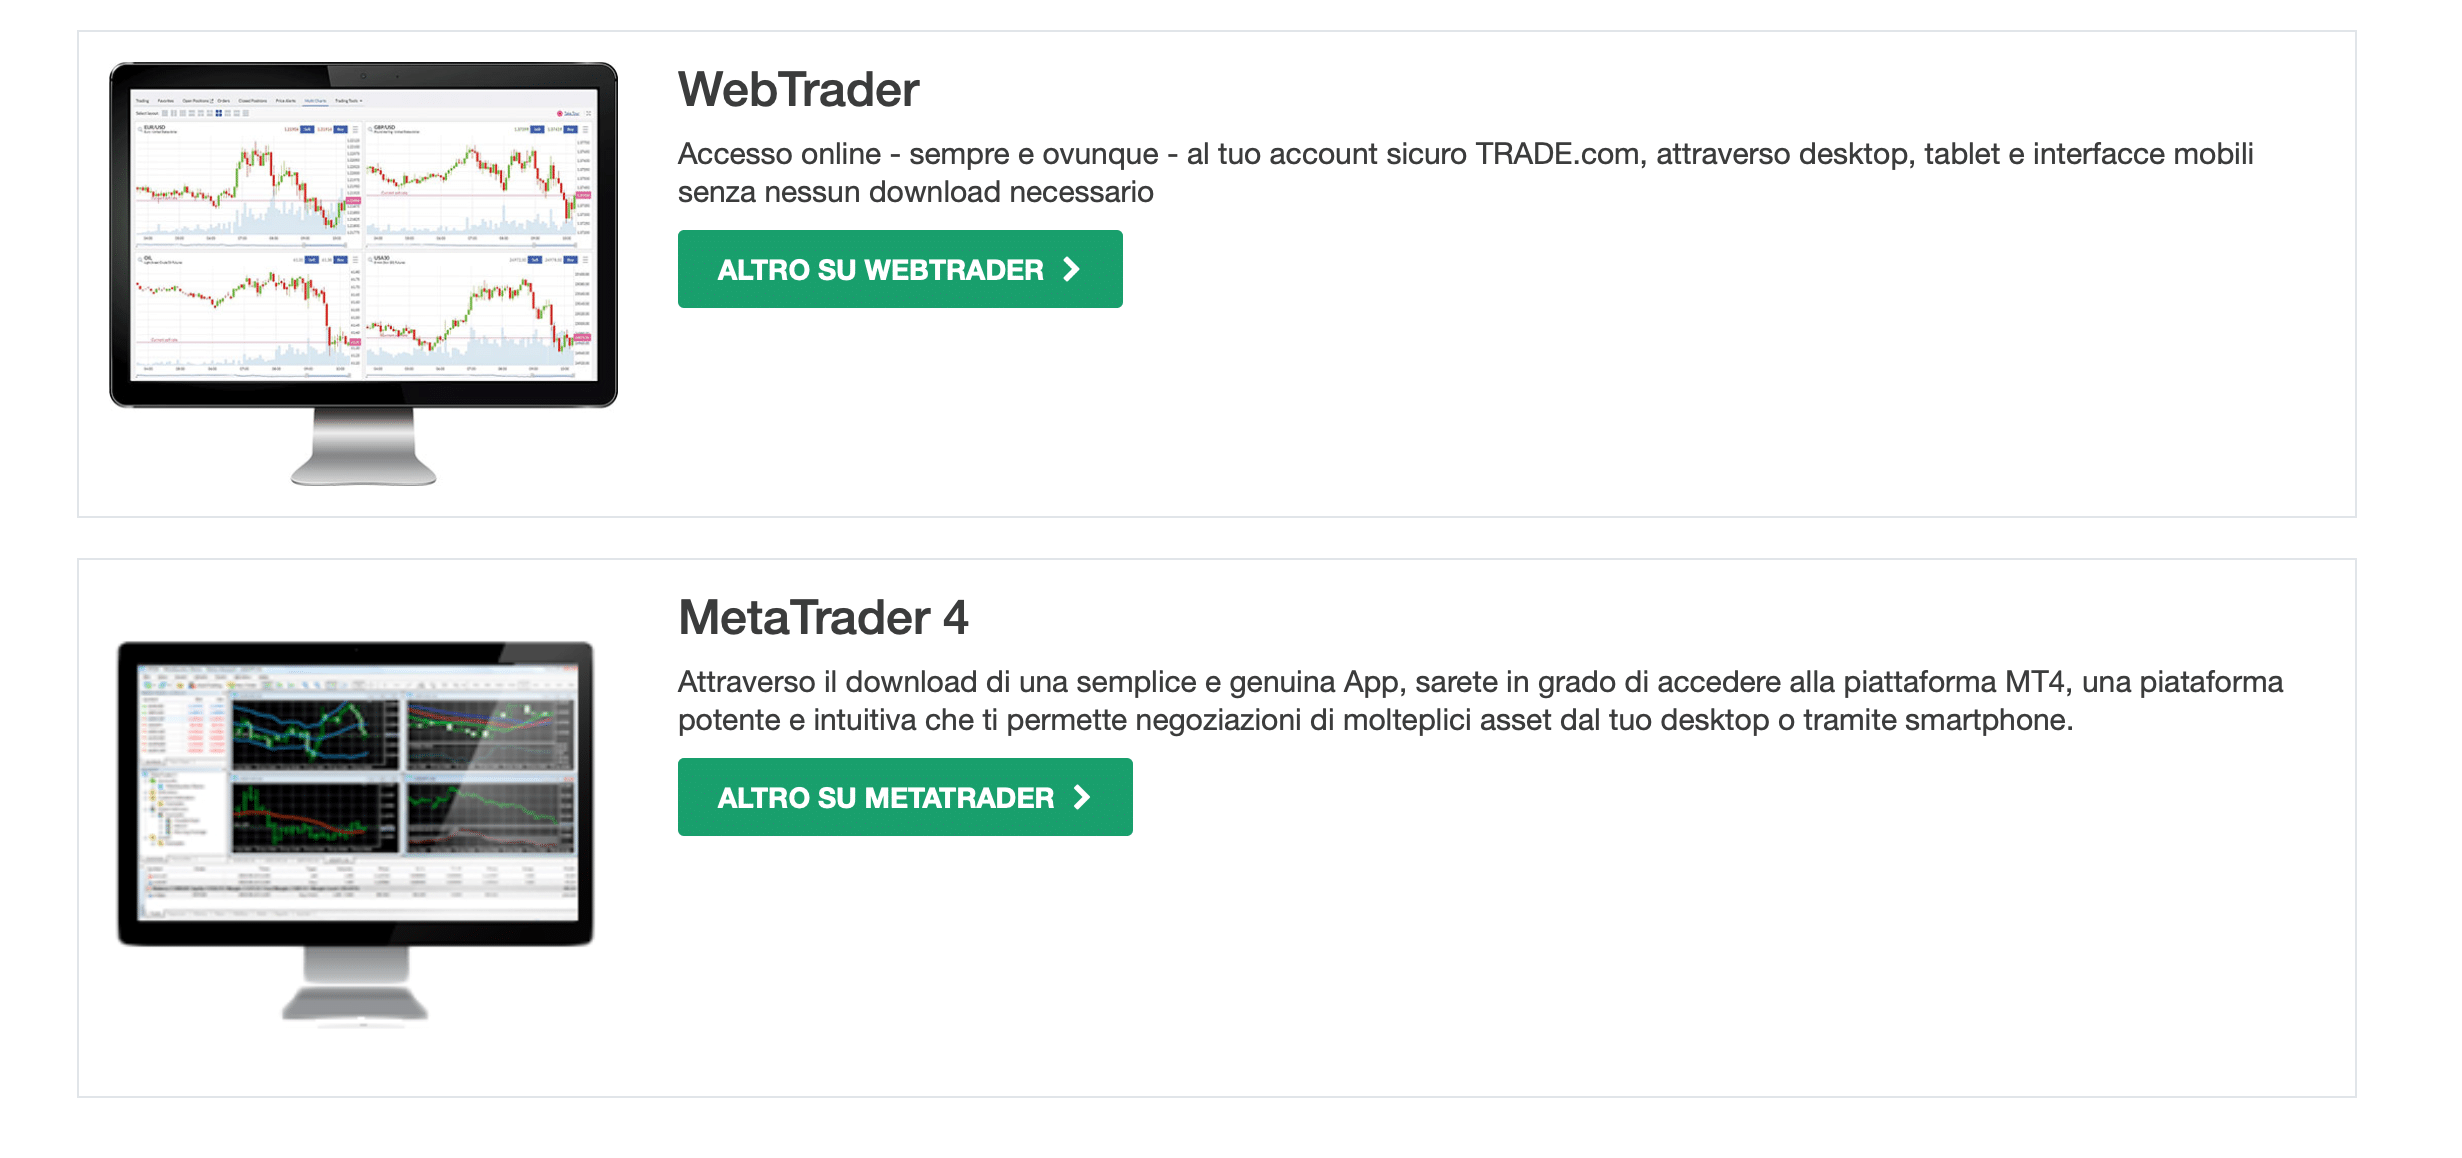 Trade.com offre due ottime alternative